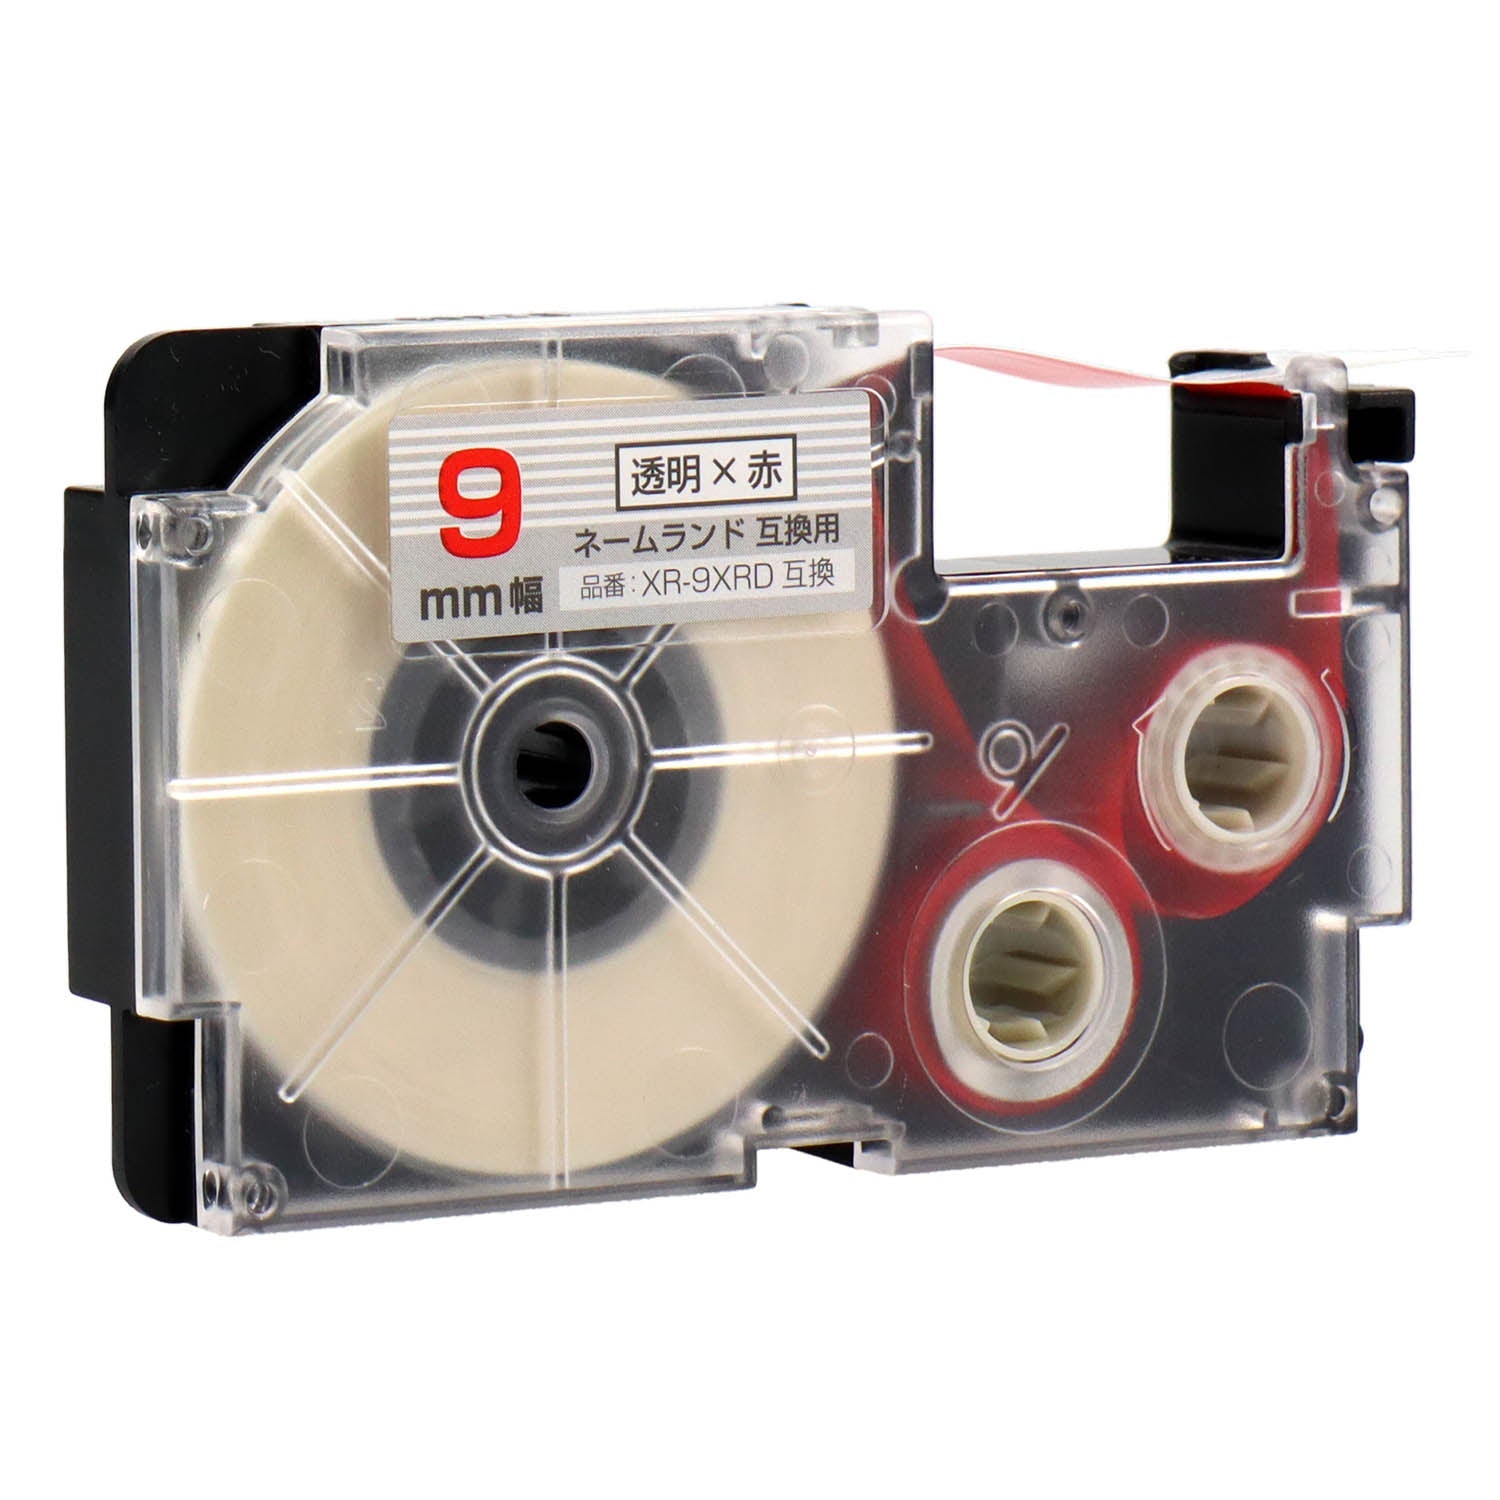 ネームランド用互換テープカートリッジ 透明×赤文字 9mm